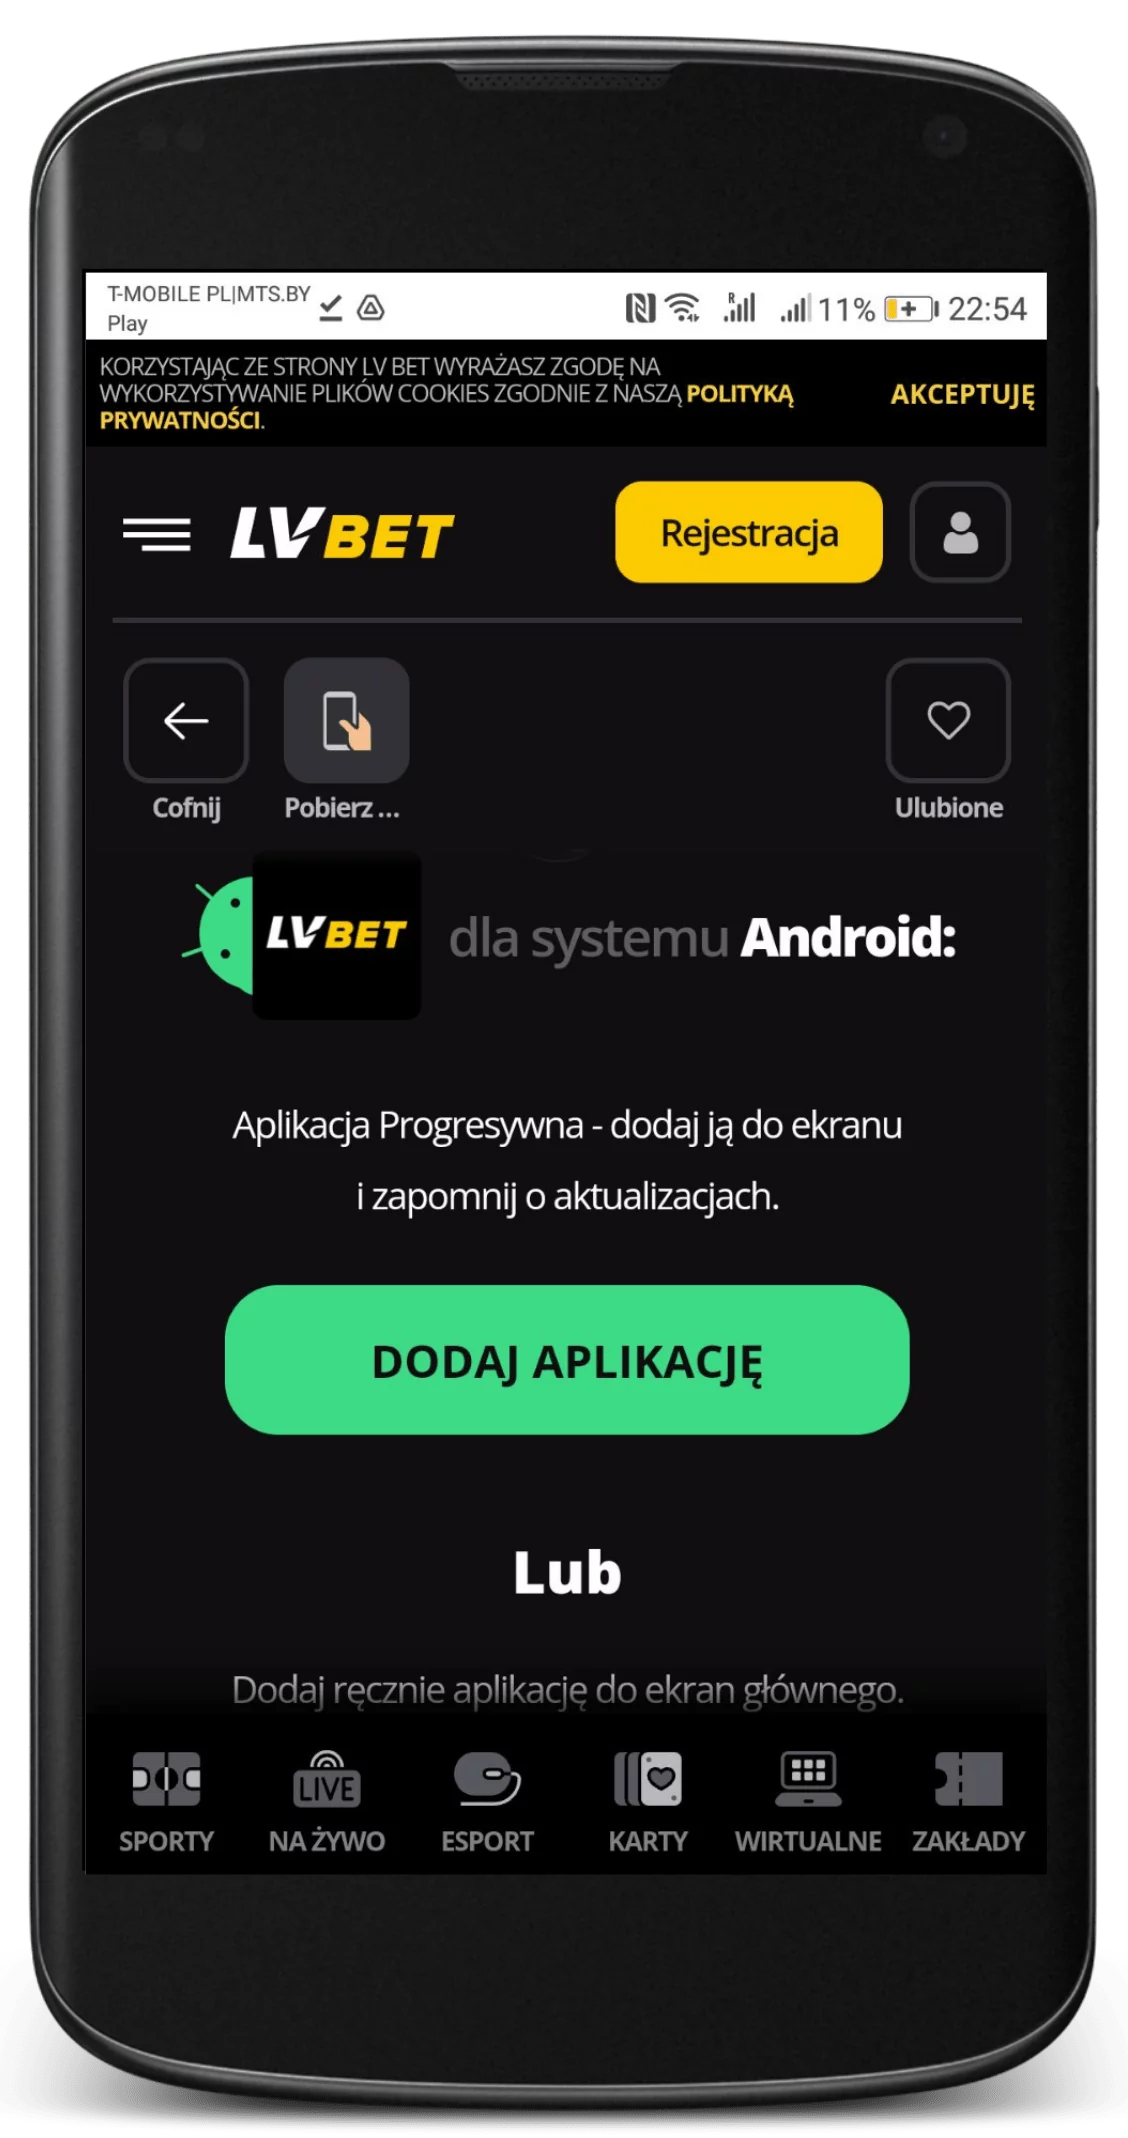 Pobrać aplikację mobilną na Android w rozdziale aplikacji na oficjalnej stronie legalnego bukmachera LVBet